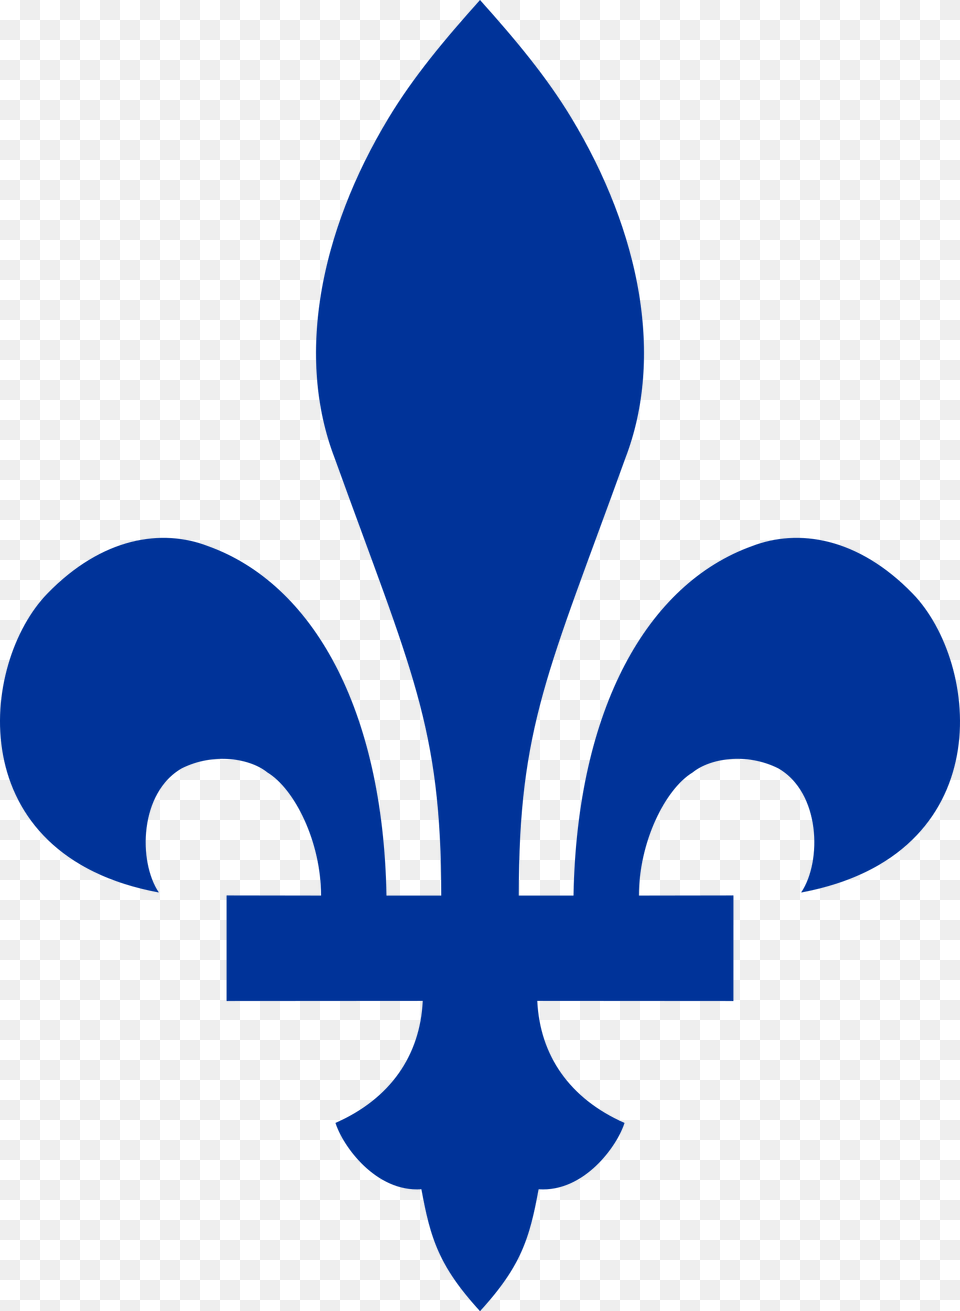 Quebec Fleur De Lis, Symbol Png Image